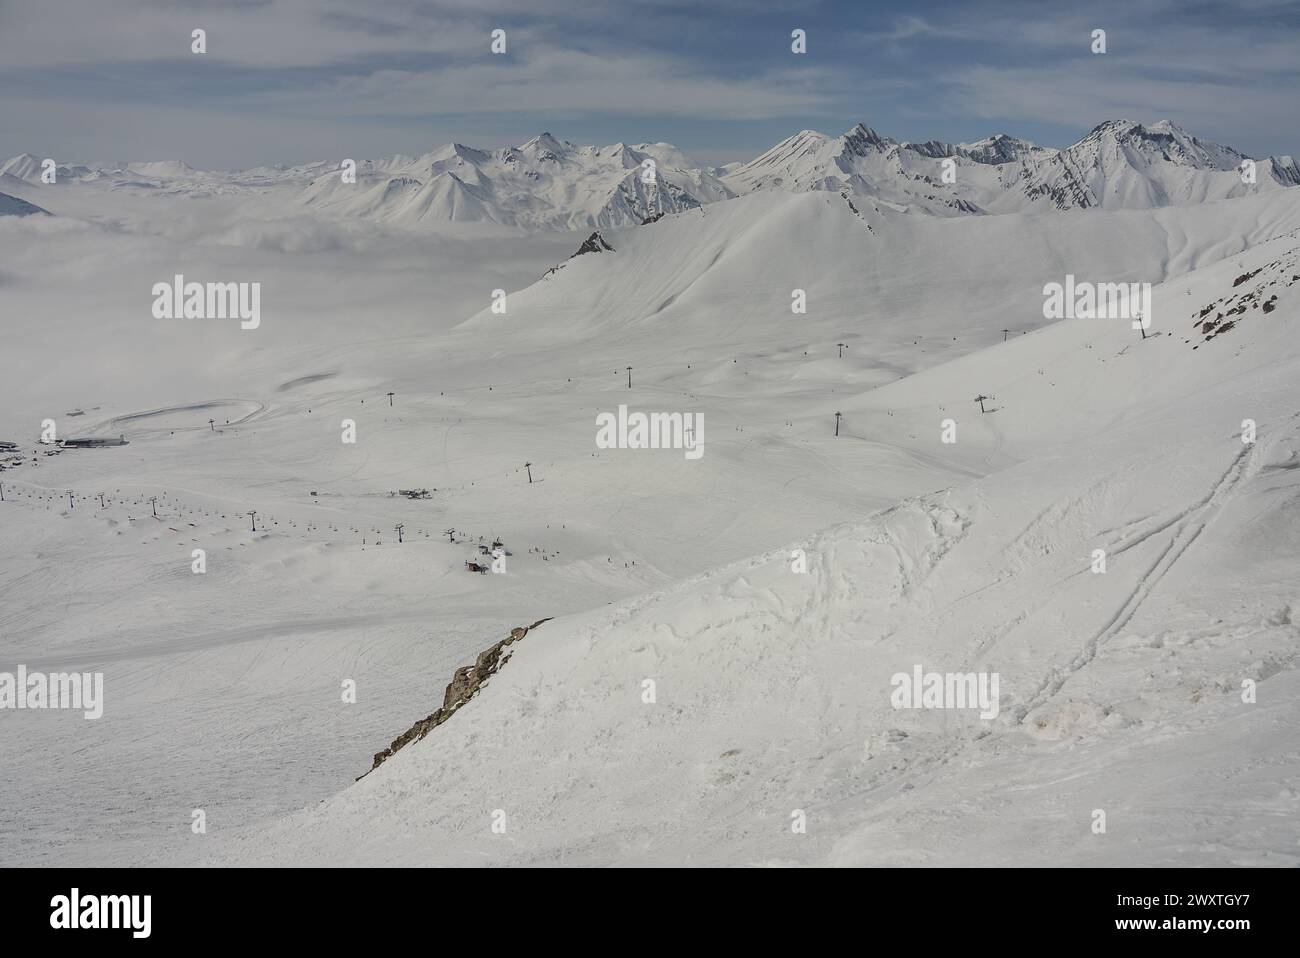 Panorama aérien de Kudebi, Bidara, Sadzele, Kobi dans les montagnes hivernales du caucase. Vue aérienne drone de la station de ski de Gudauri en hiver. Montagnes du Caucase en G Banque D'Images